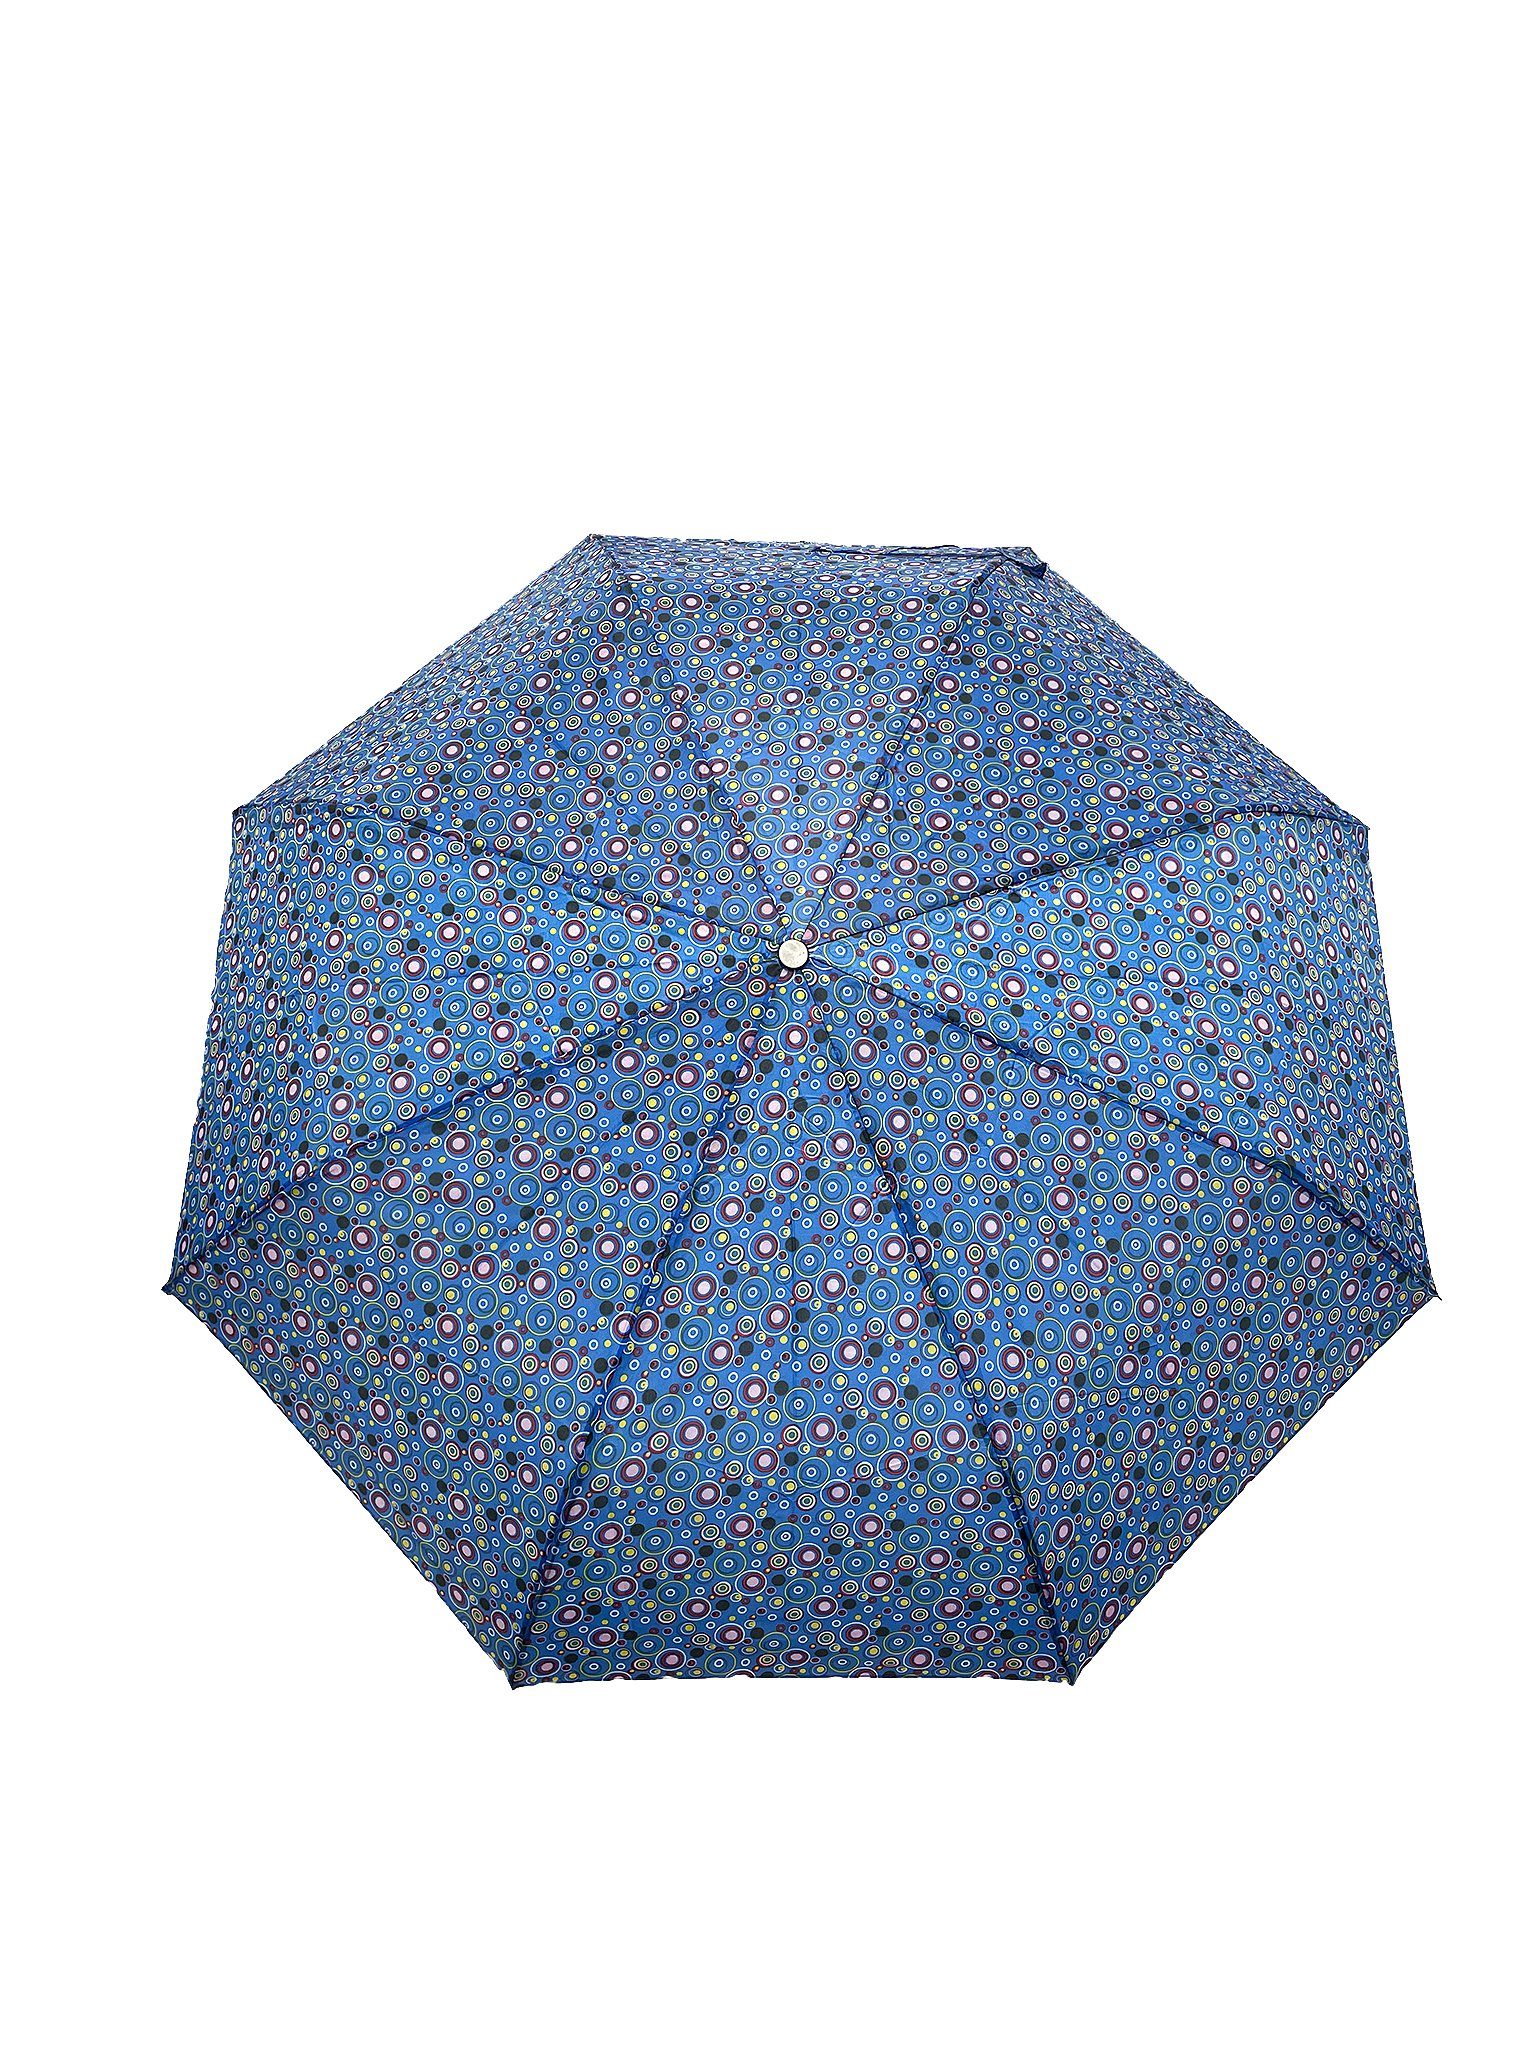 Paris ANELY Regenschirm Gemustert Kleiner in 6746 Blau-Grün Taschenregenschirm Taschenschirm,